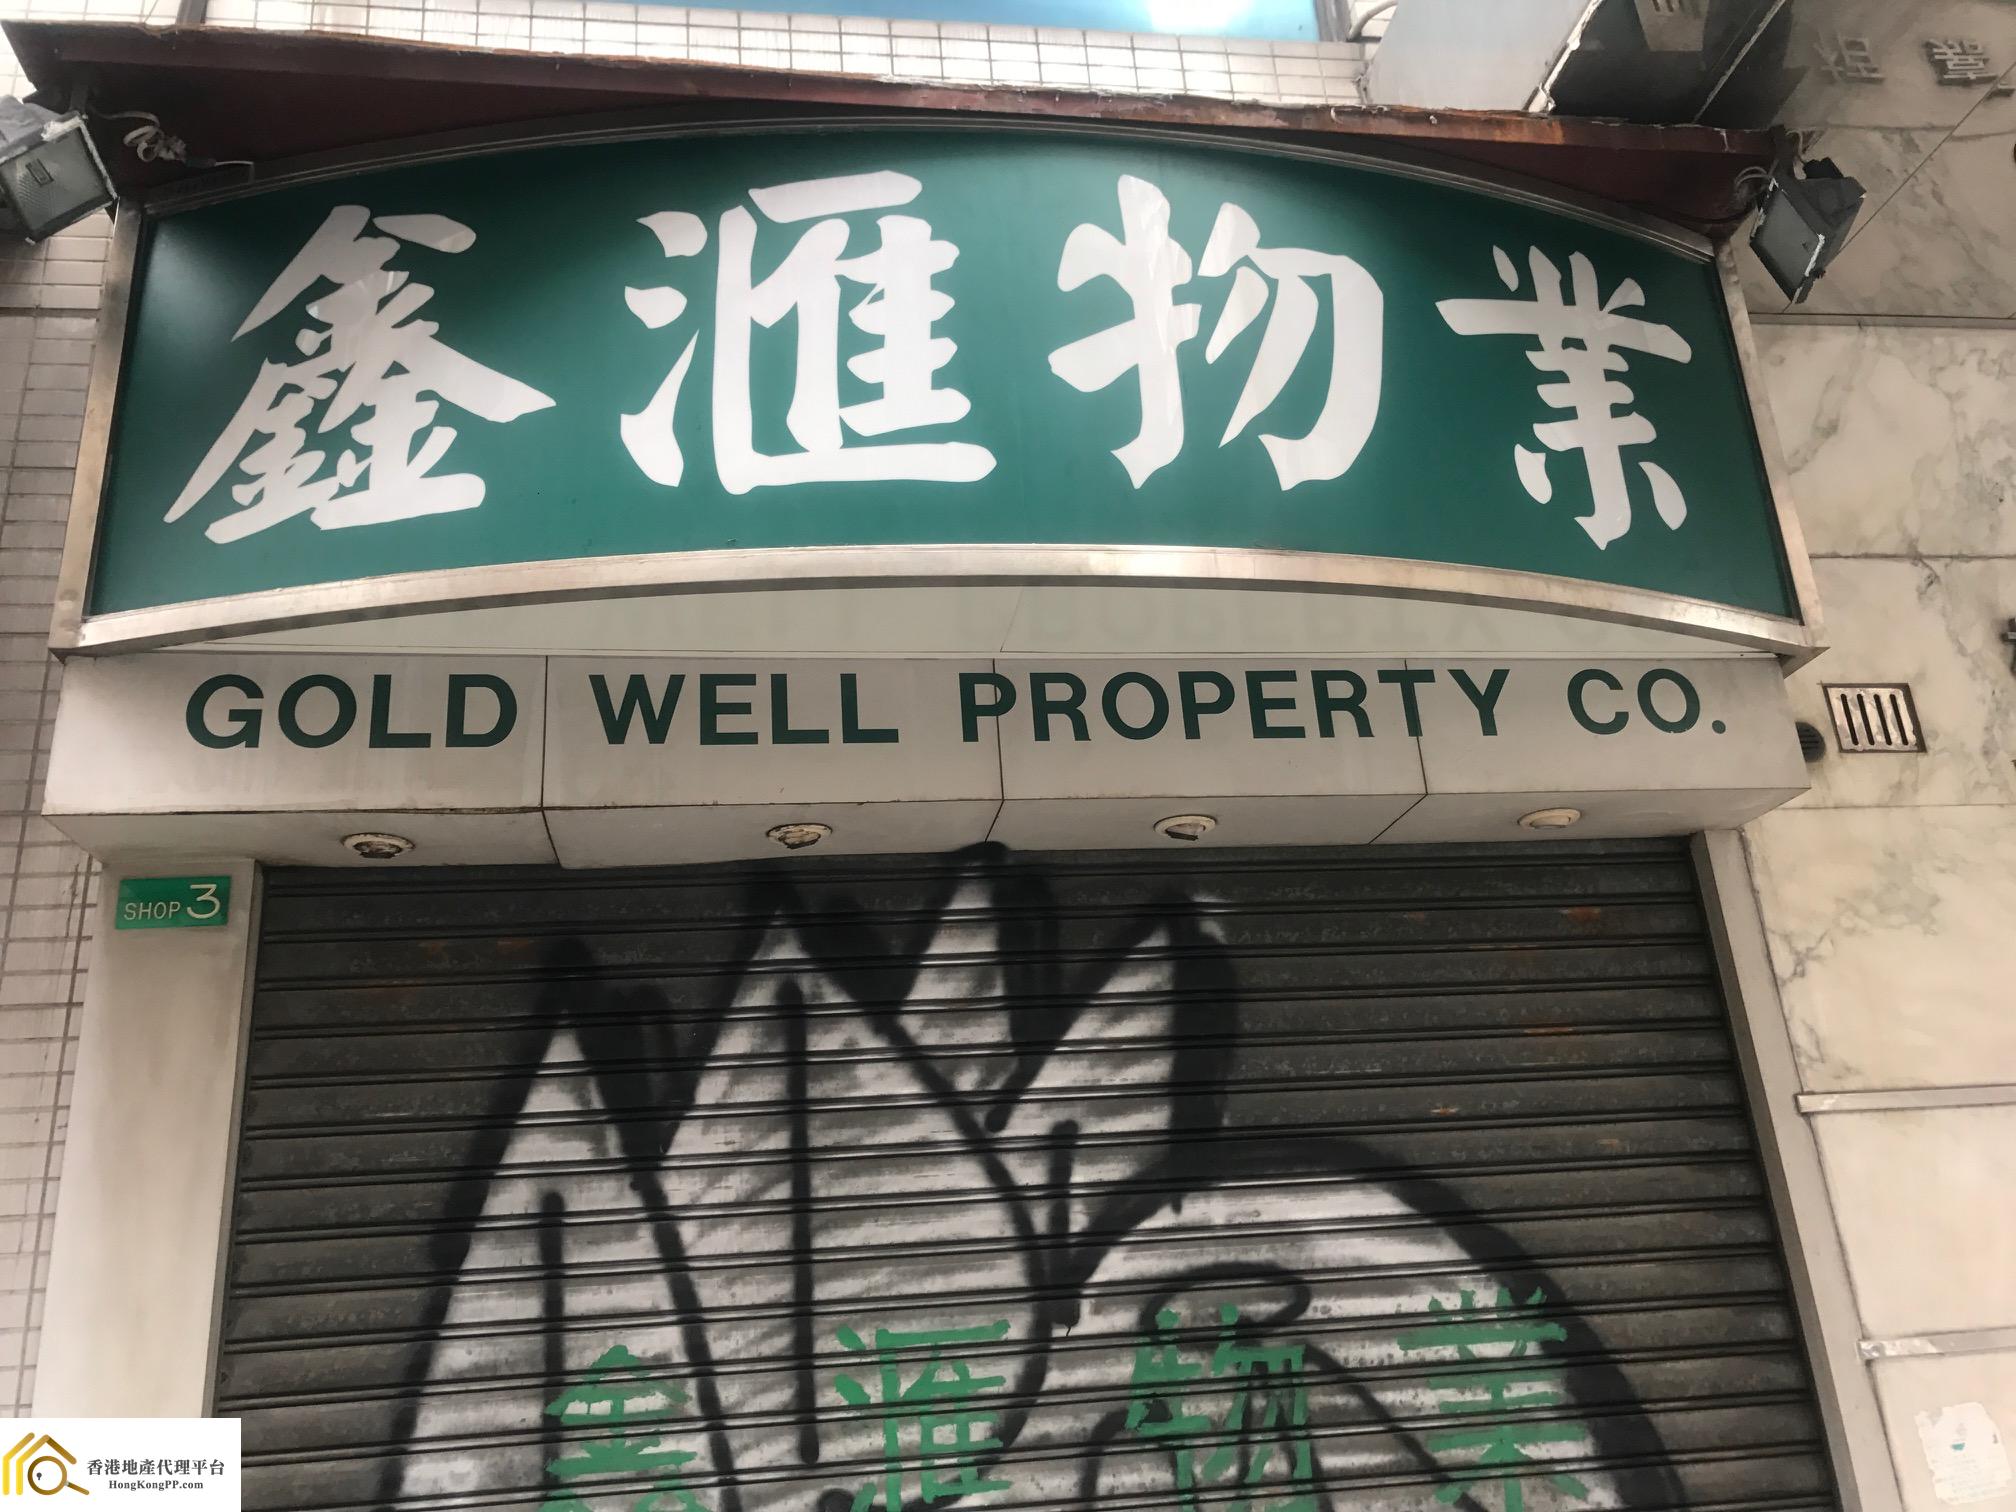 地產代理公司: 鑫滙物業 Gold Well Property